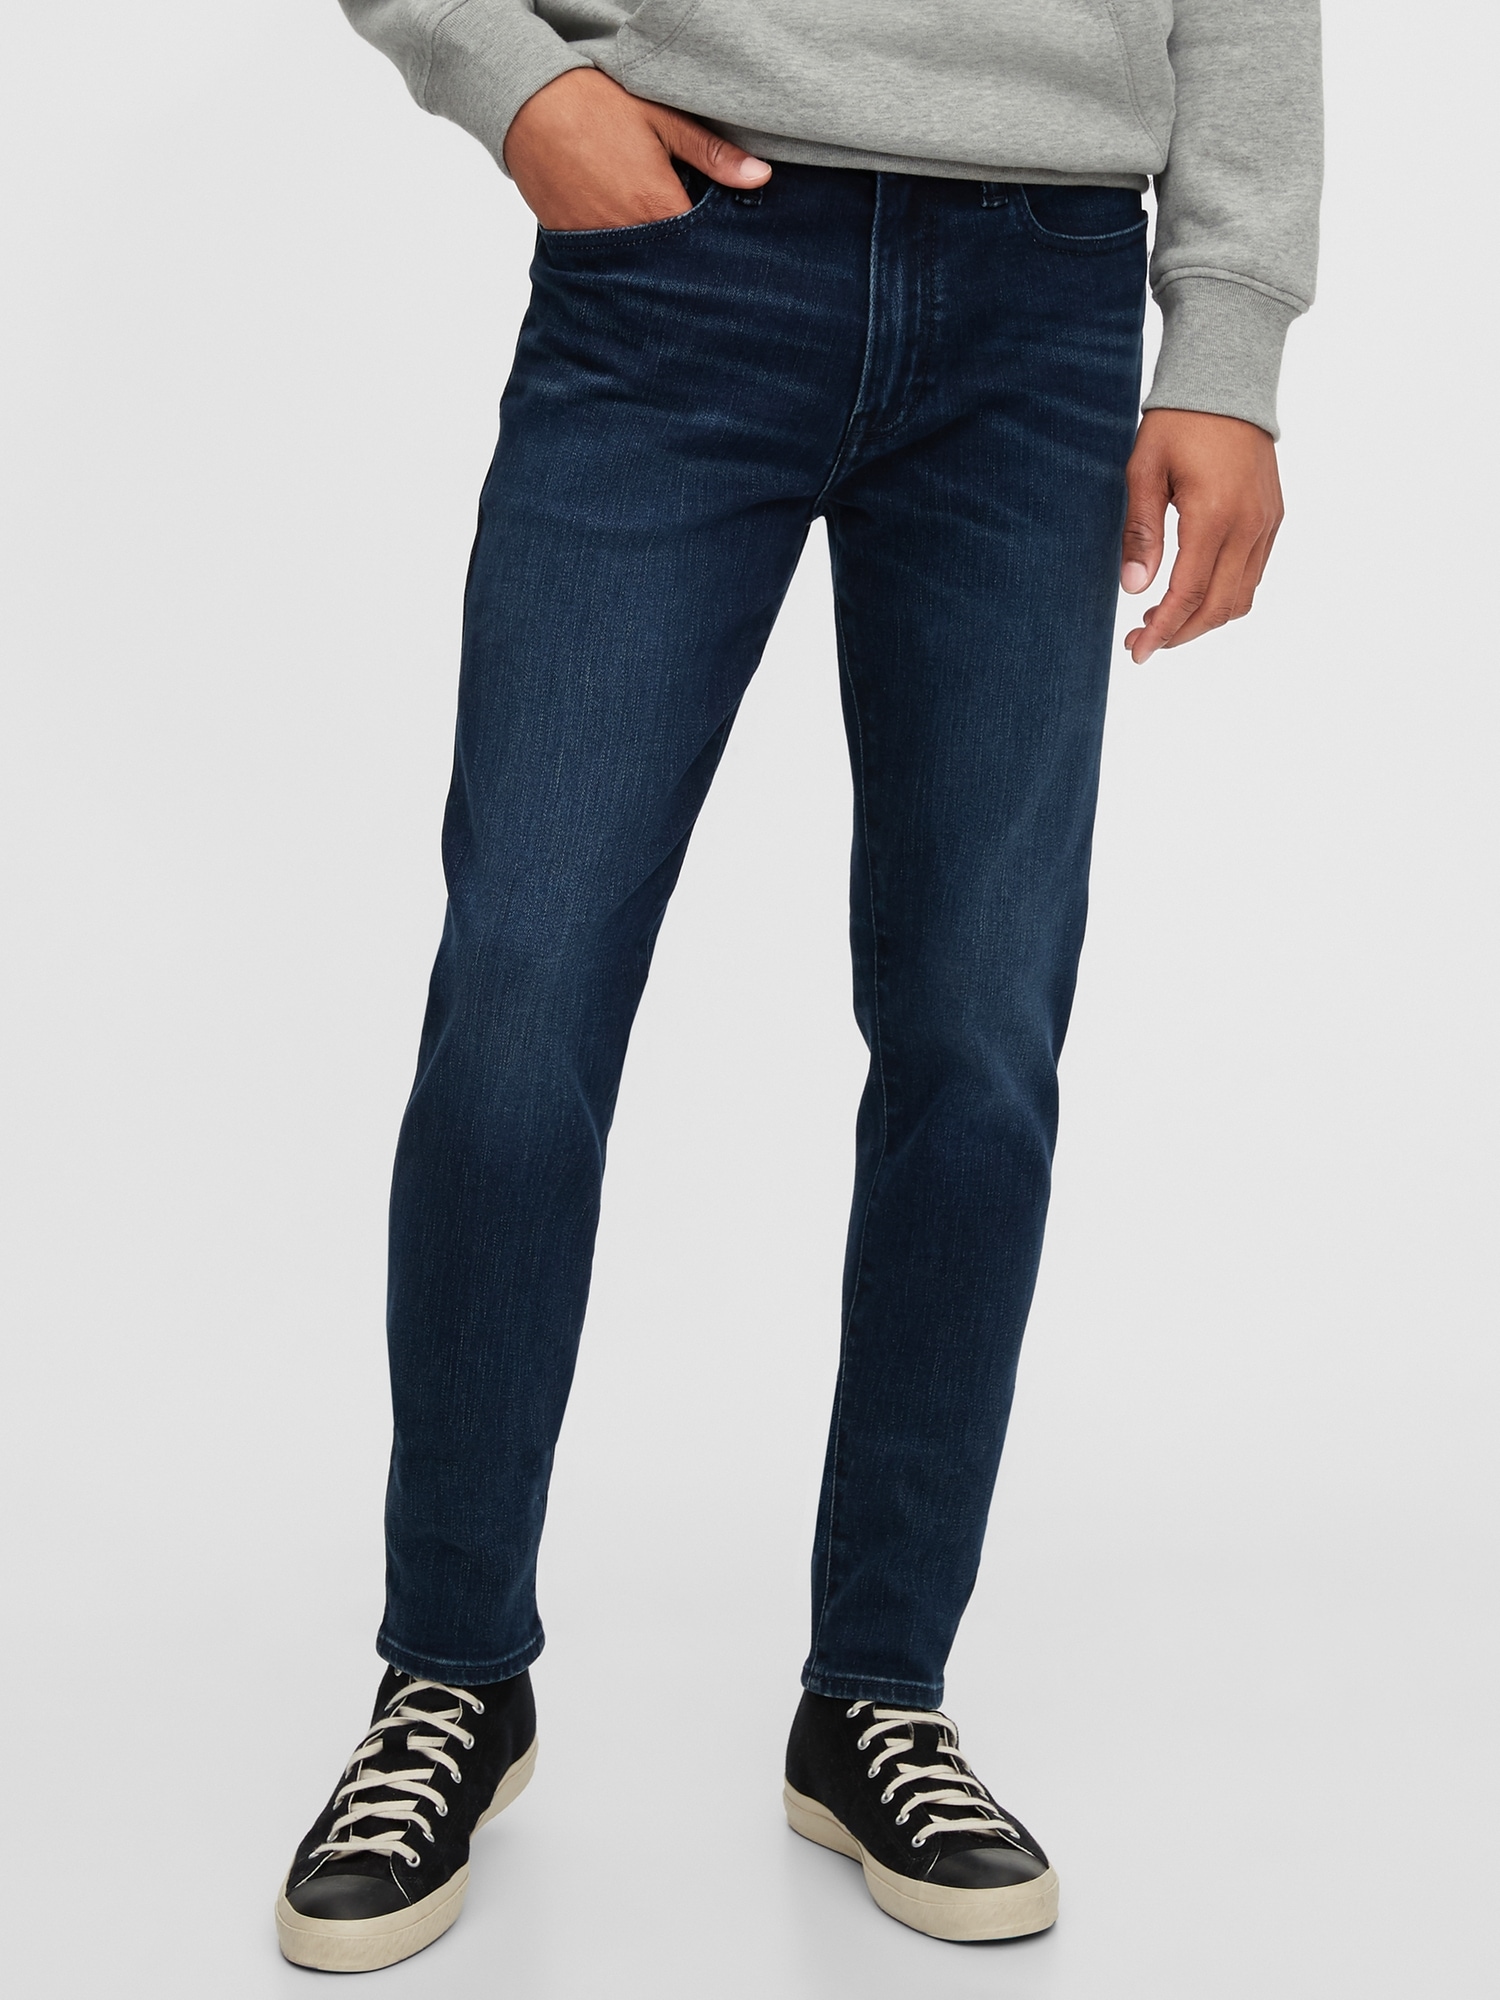 gap soft wear jeans